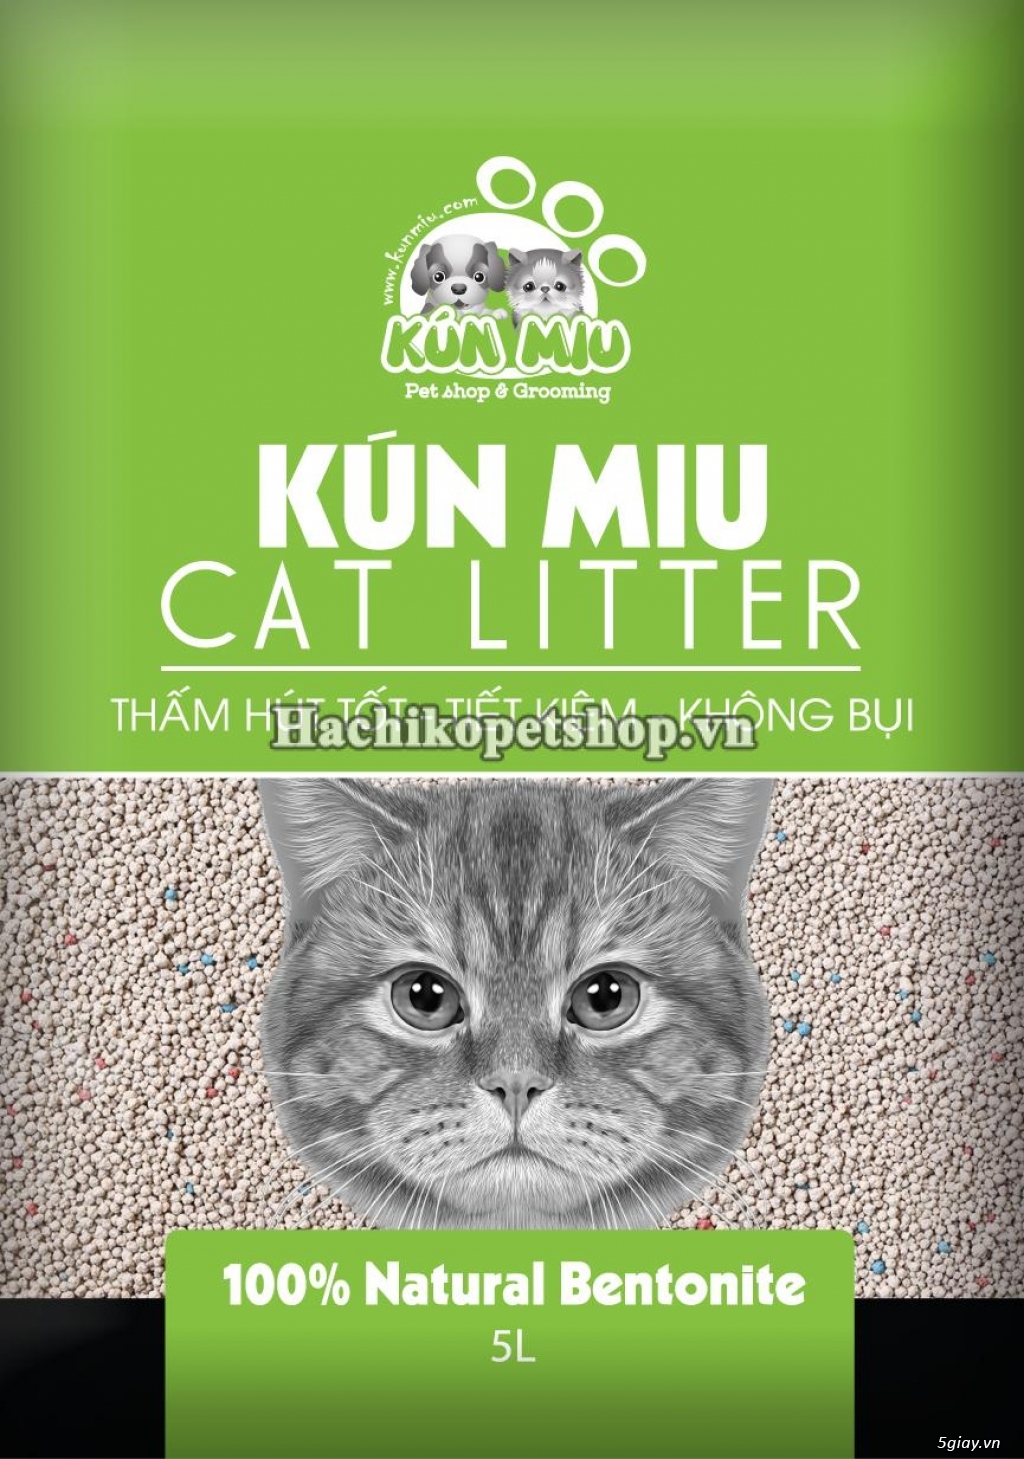 HCM - Đại Lý Cung Sỉ Lẻ Cát Vệ Sinh Cho Mèo, giao hàng toàn quốc, uy tín chất lượng. - 1